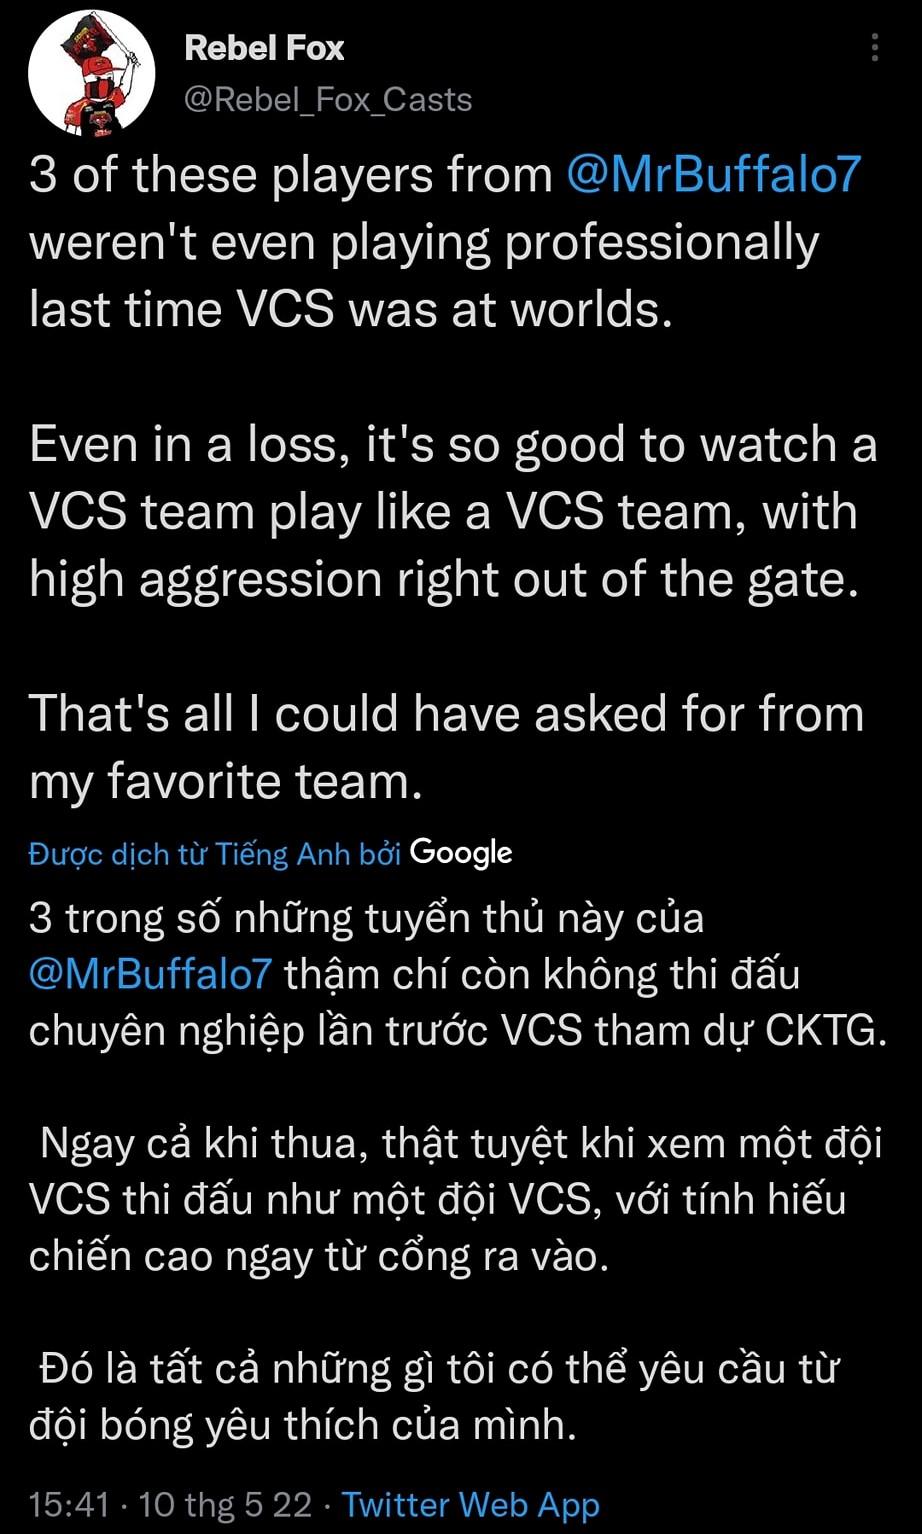 Bại trận trước T1 nhưng Saigon Buffalo vẫn được bạn bè quốc tế ca ngợi: ‘Màn comeback bùng cháy của VCS’